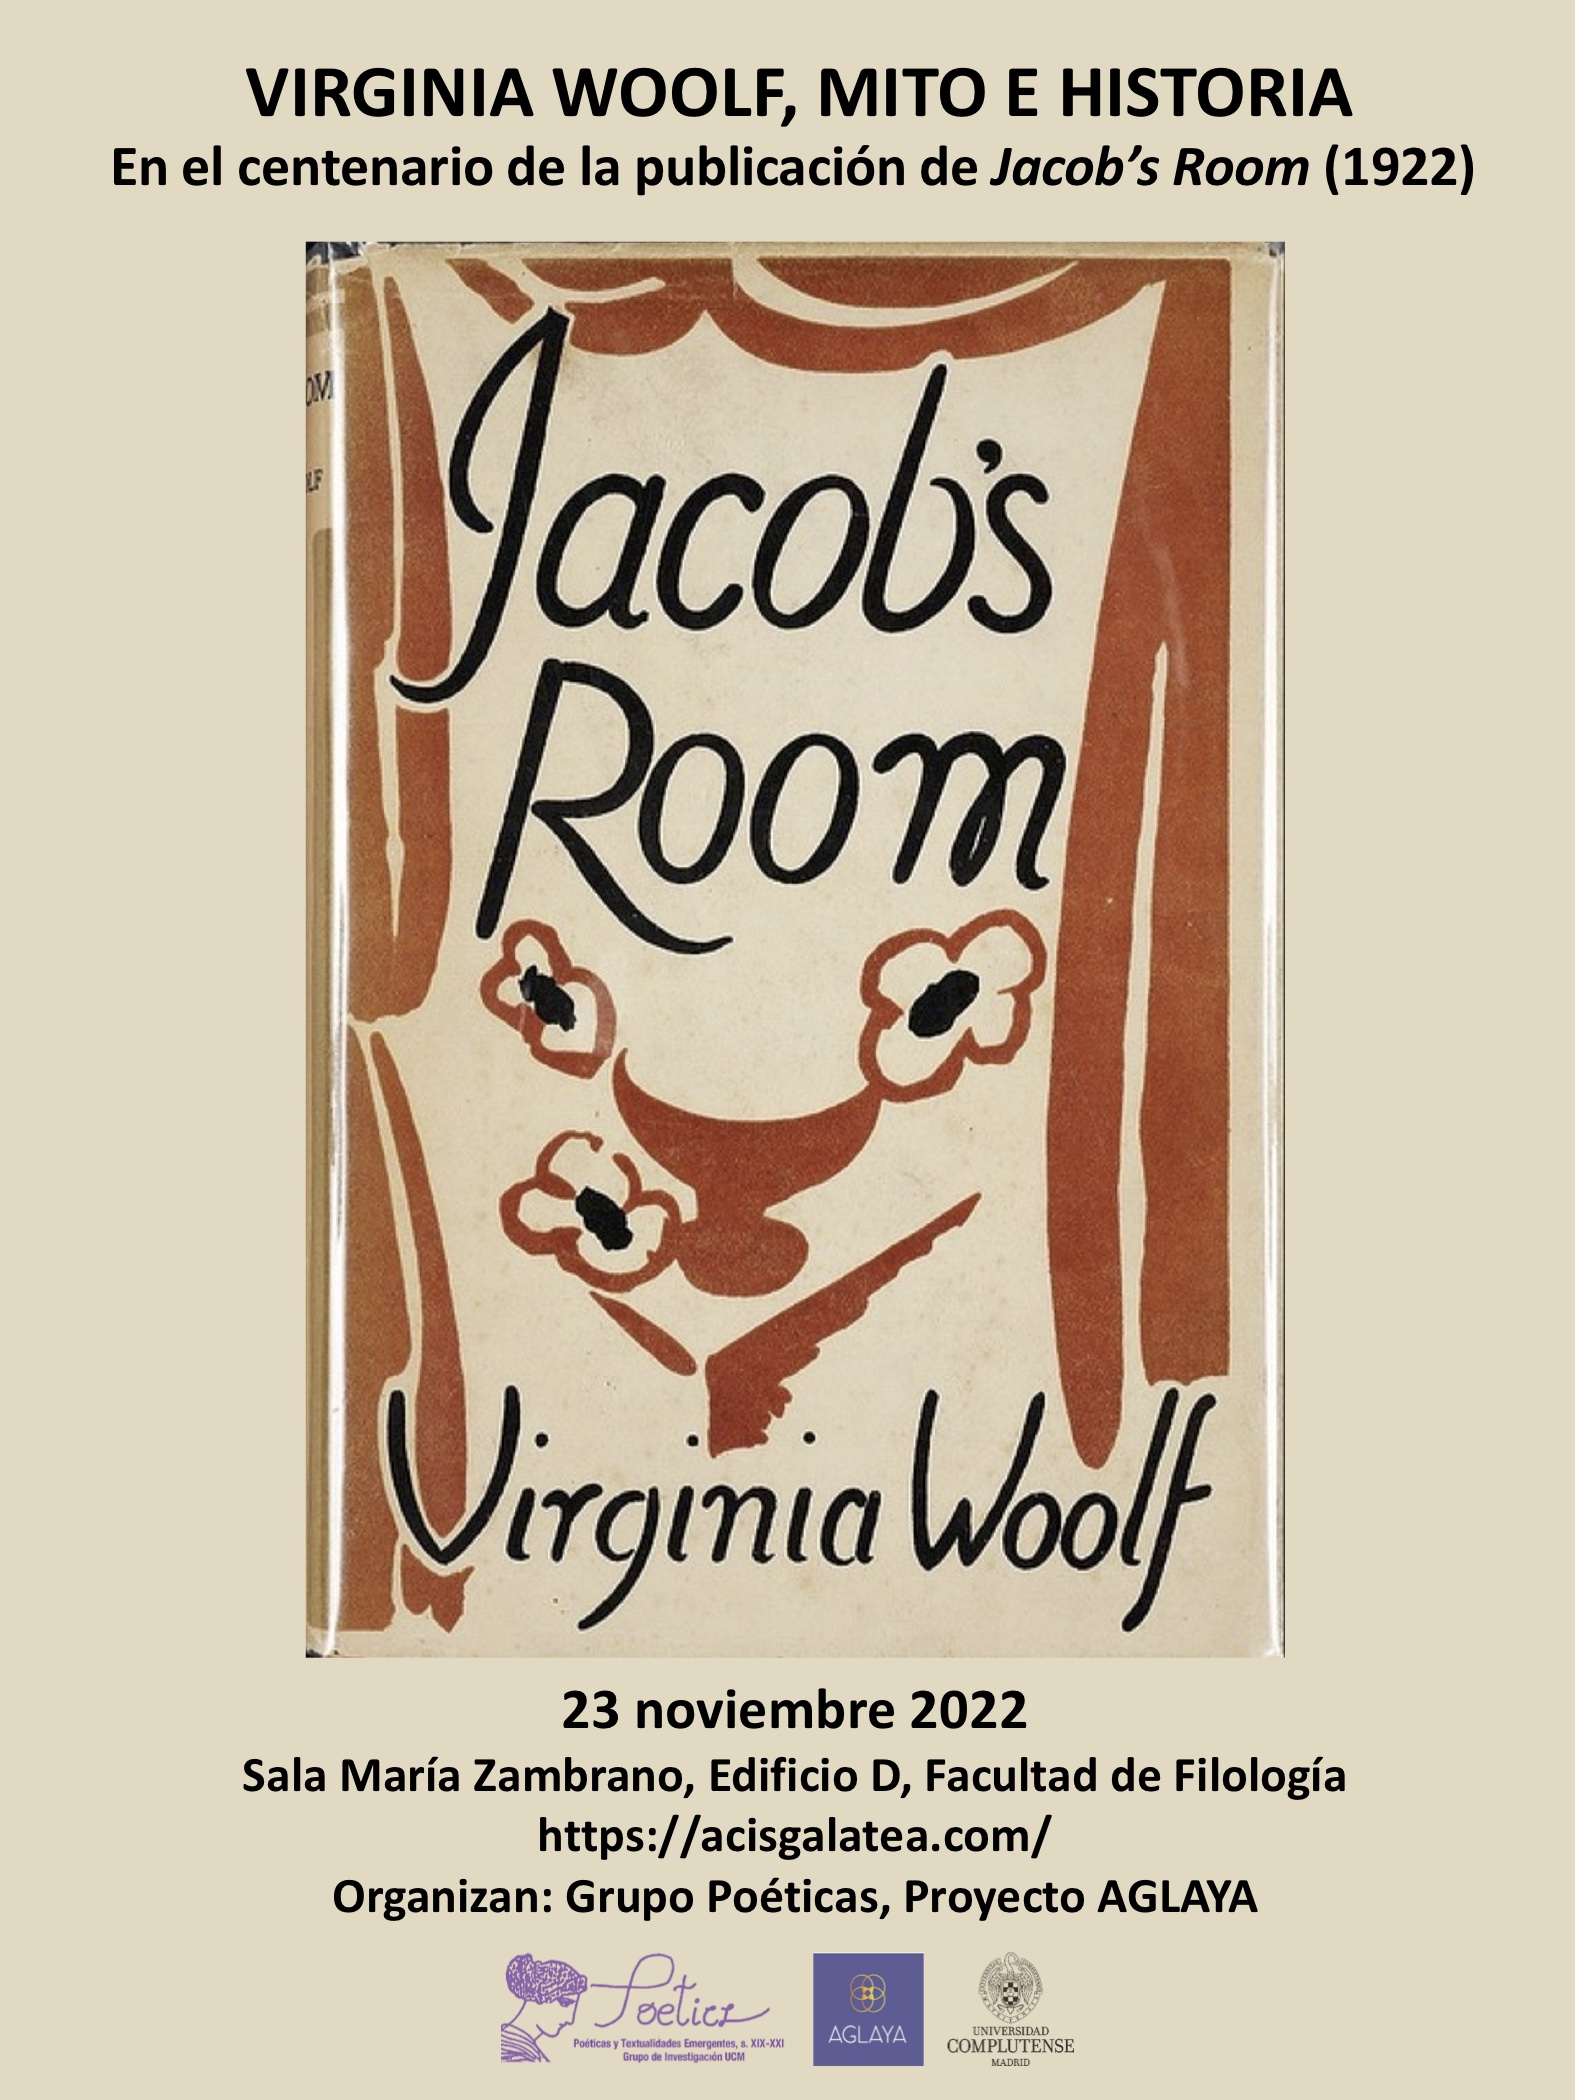 Virginia Woolf, Mito e Historia, miércoles 23 de noviembre de 2022